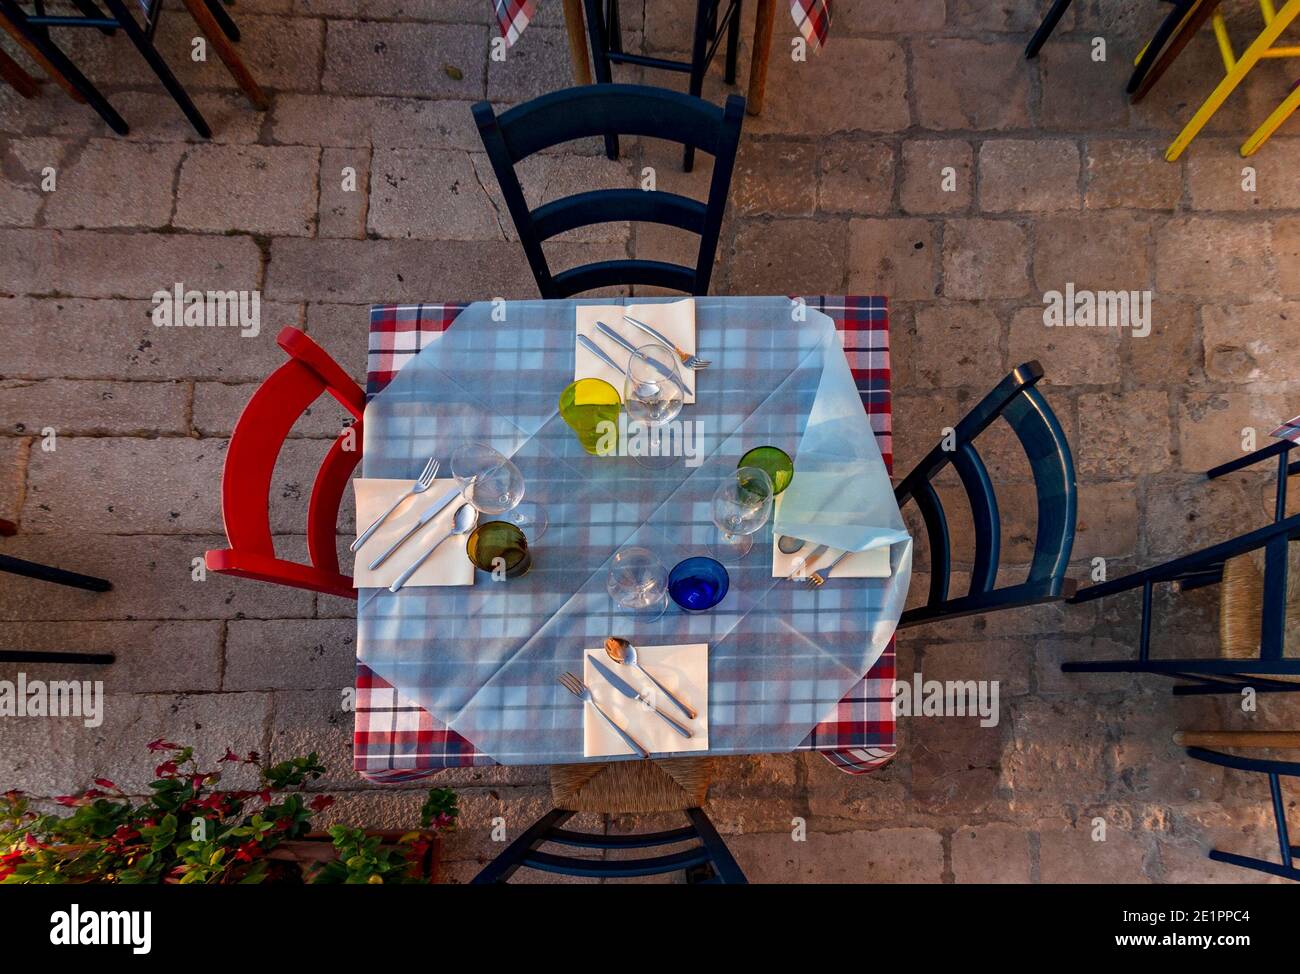 Nahaufnahme von oben gesehen von einem gedeckten Tisch in einem Restaurant Stockfoto